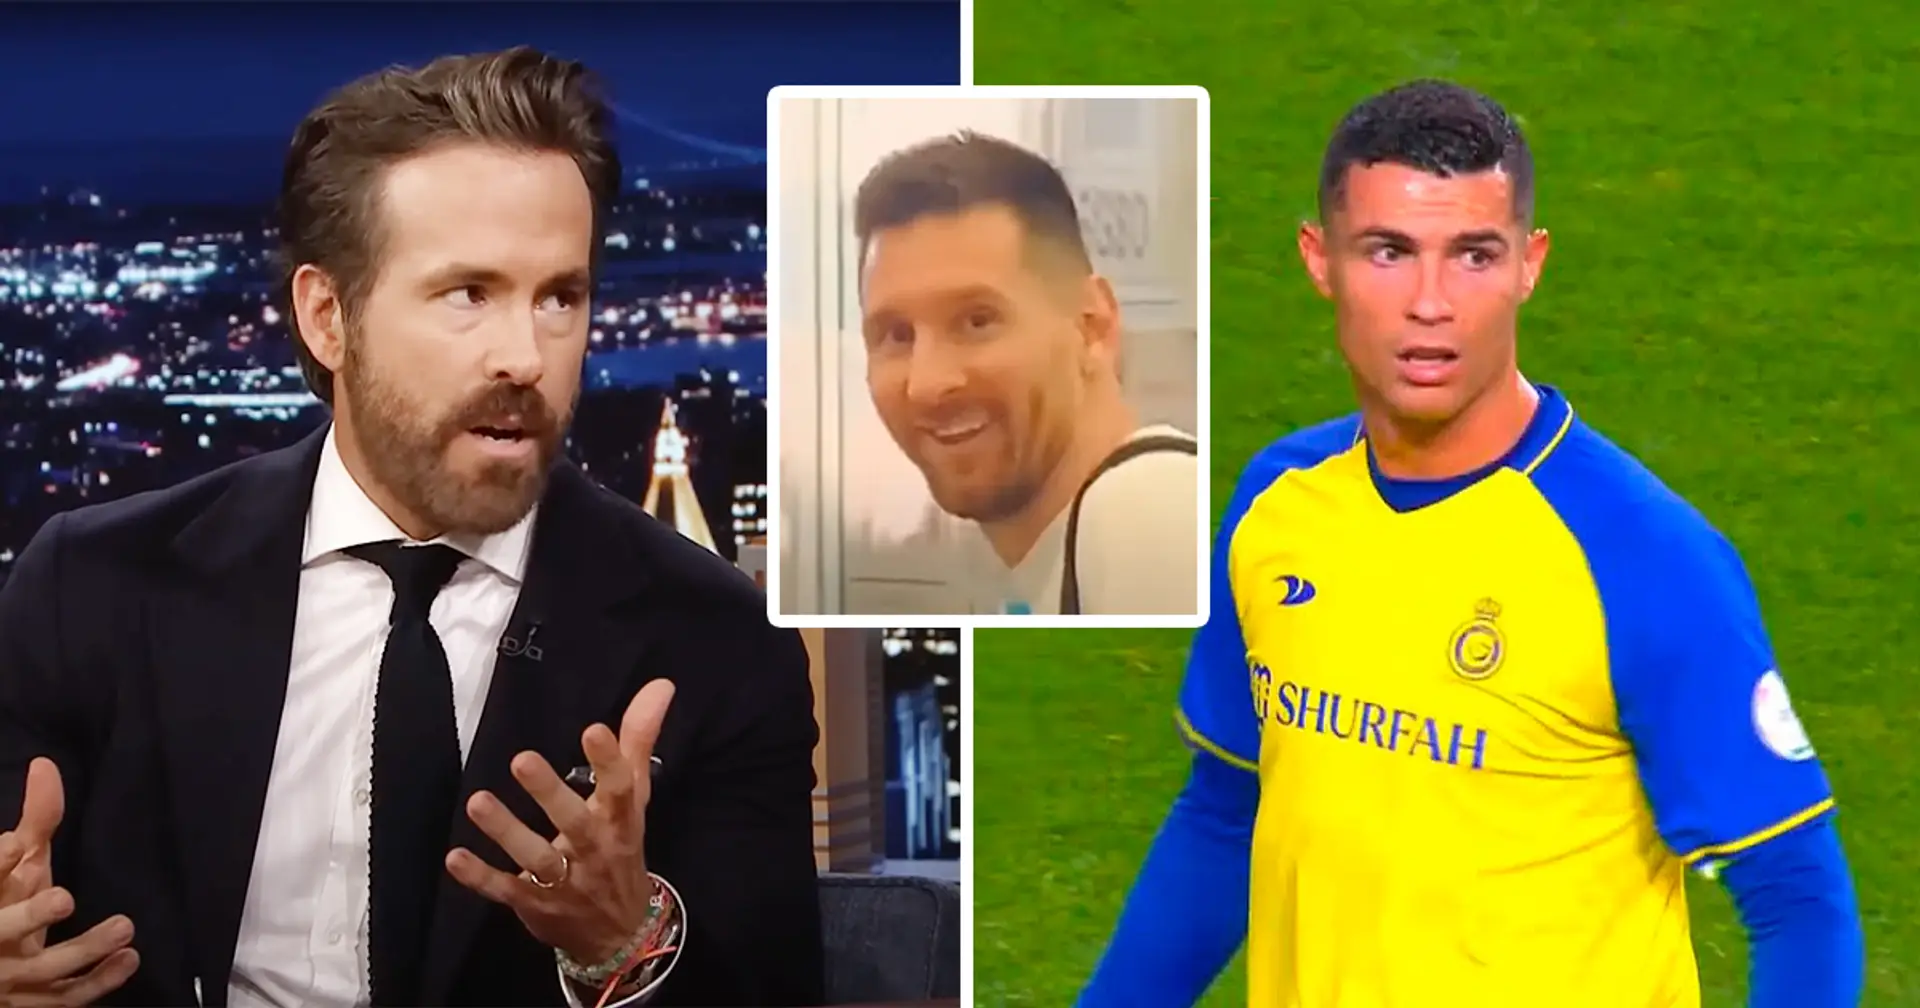 Wrexham-Besitzer Ryan Reynolds gibt ein ehrliches Urteil über die GOAT-Debatte ab und wählt zwischen Messi und Ronaldo